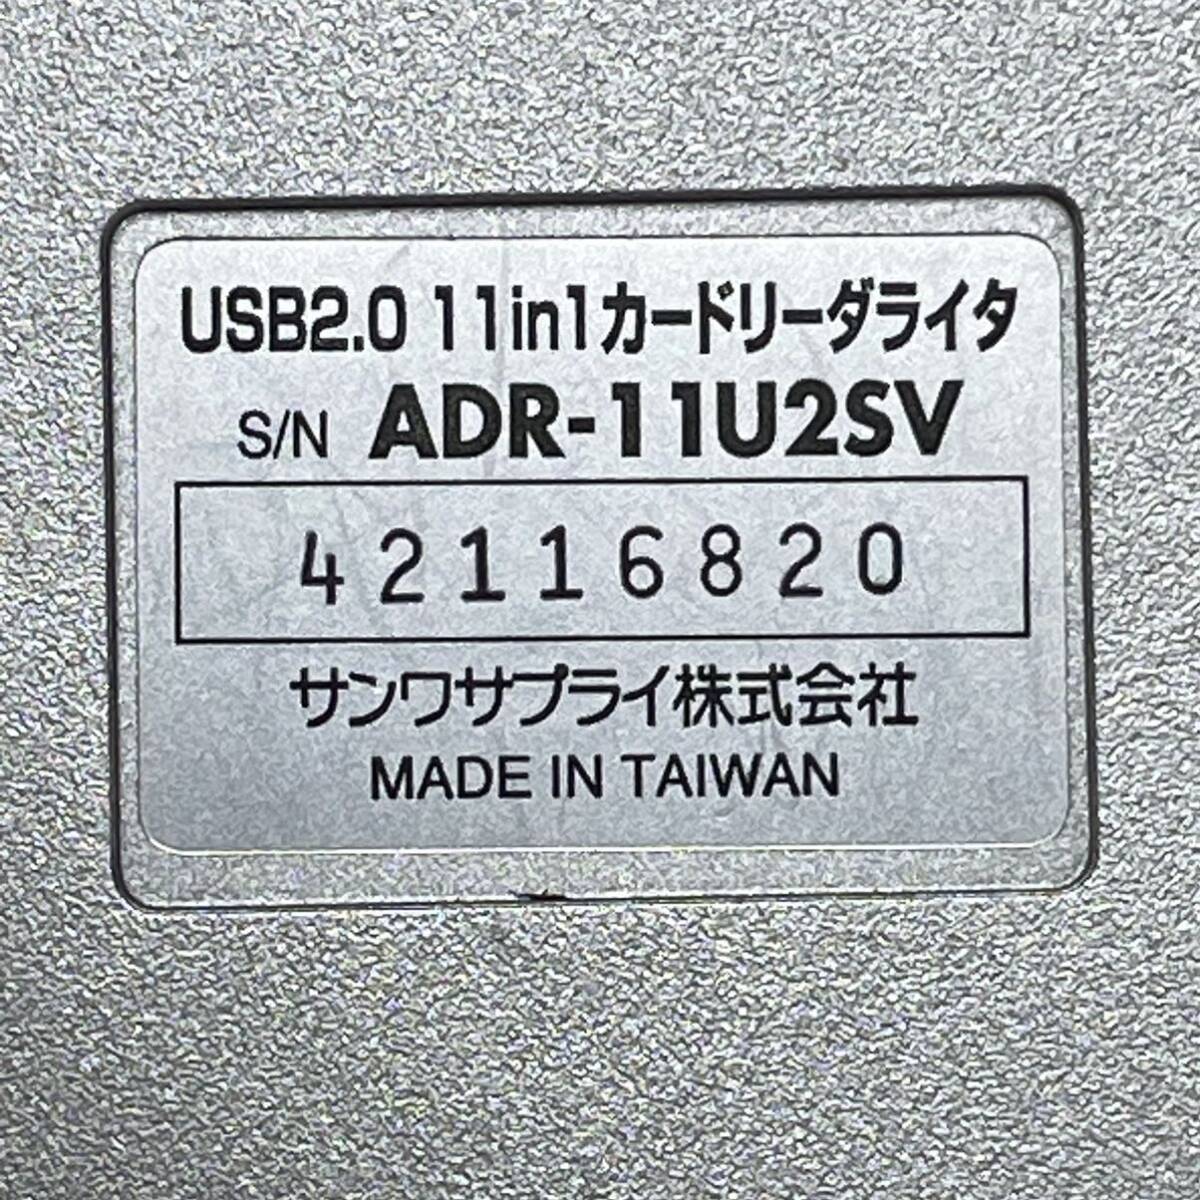 サンワサプライ USB2.0 11in1カードリーダライタ ADR-11U2SV CF/Microdrive/SM/xD/SD/MMC/MS/MSPro (USB接続/スマートメディア)